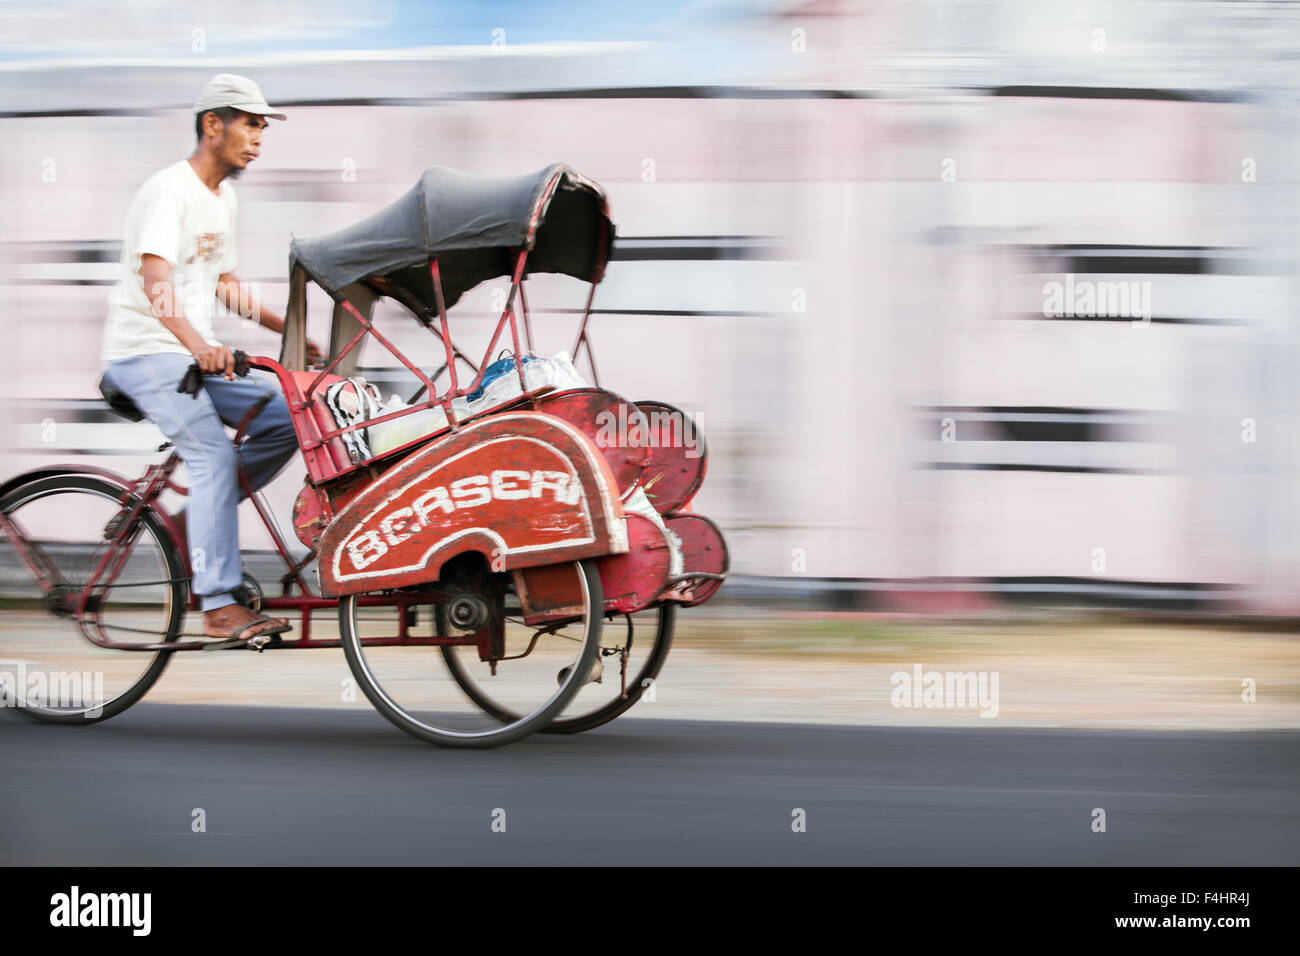 Panorama Fotografie Foto von Indonesien Becak (fahrradrikscha) bei Fahrt mit einem Slow Shutter Effekt Erstellen eines Hintergrund Bewegungsunschärfe Stockfoto